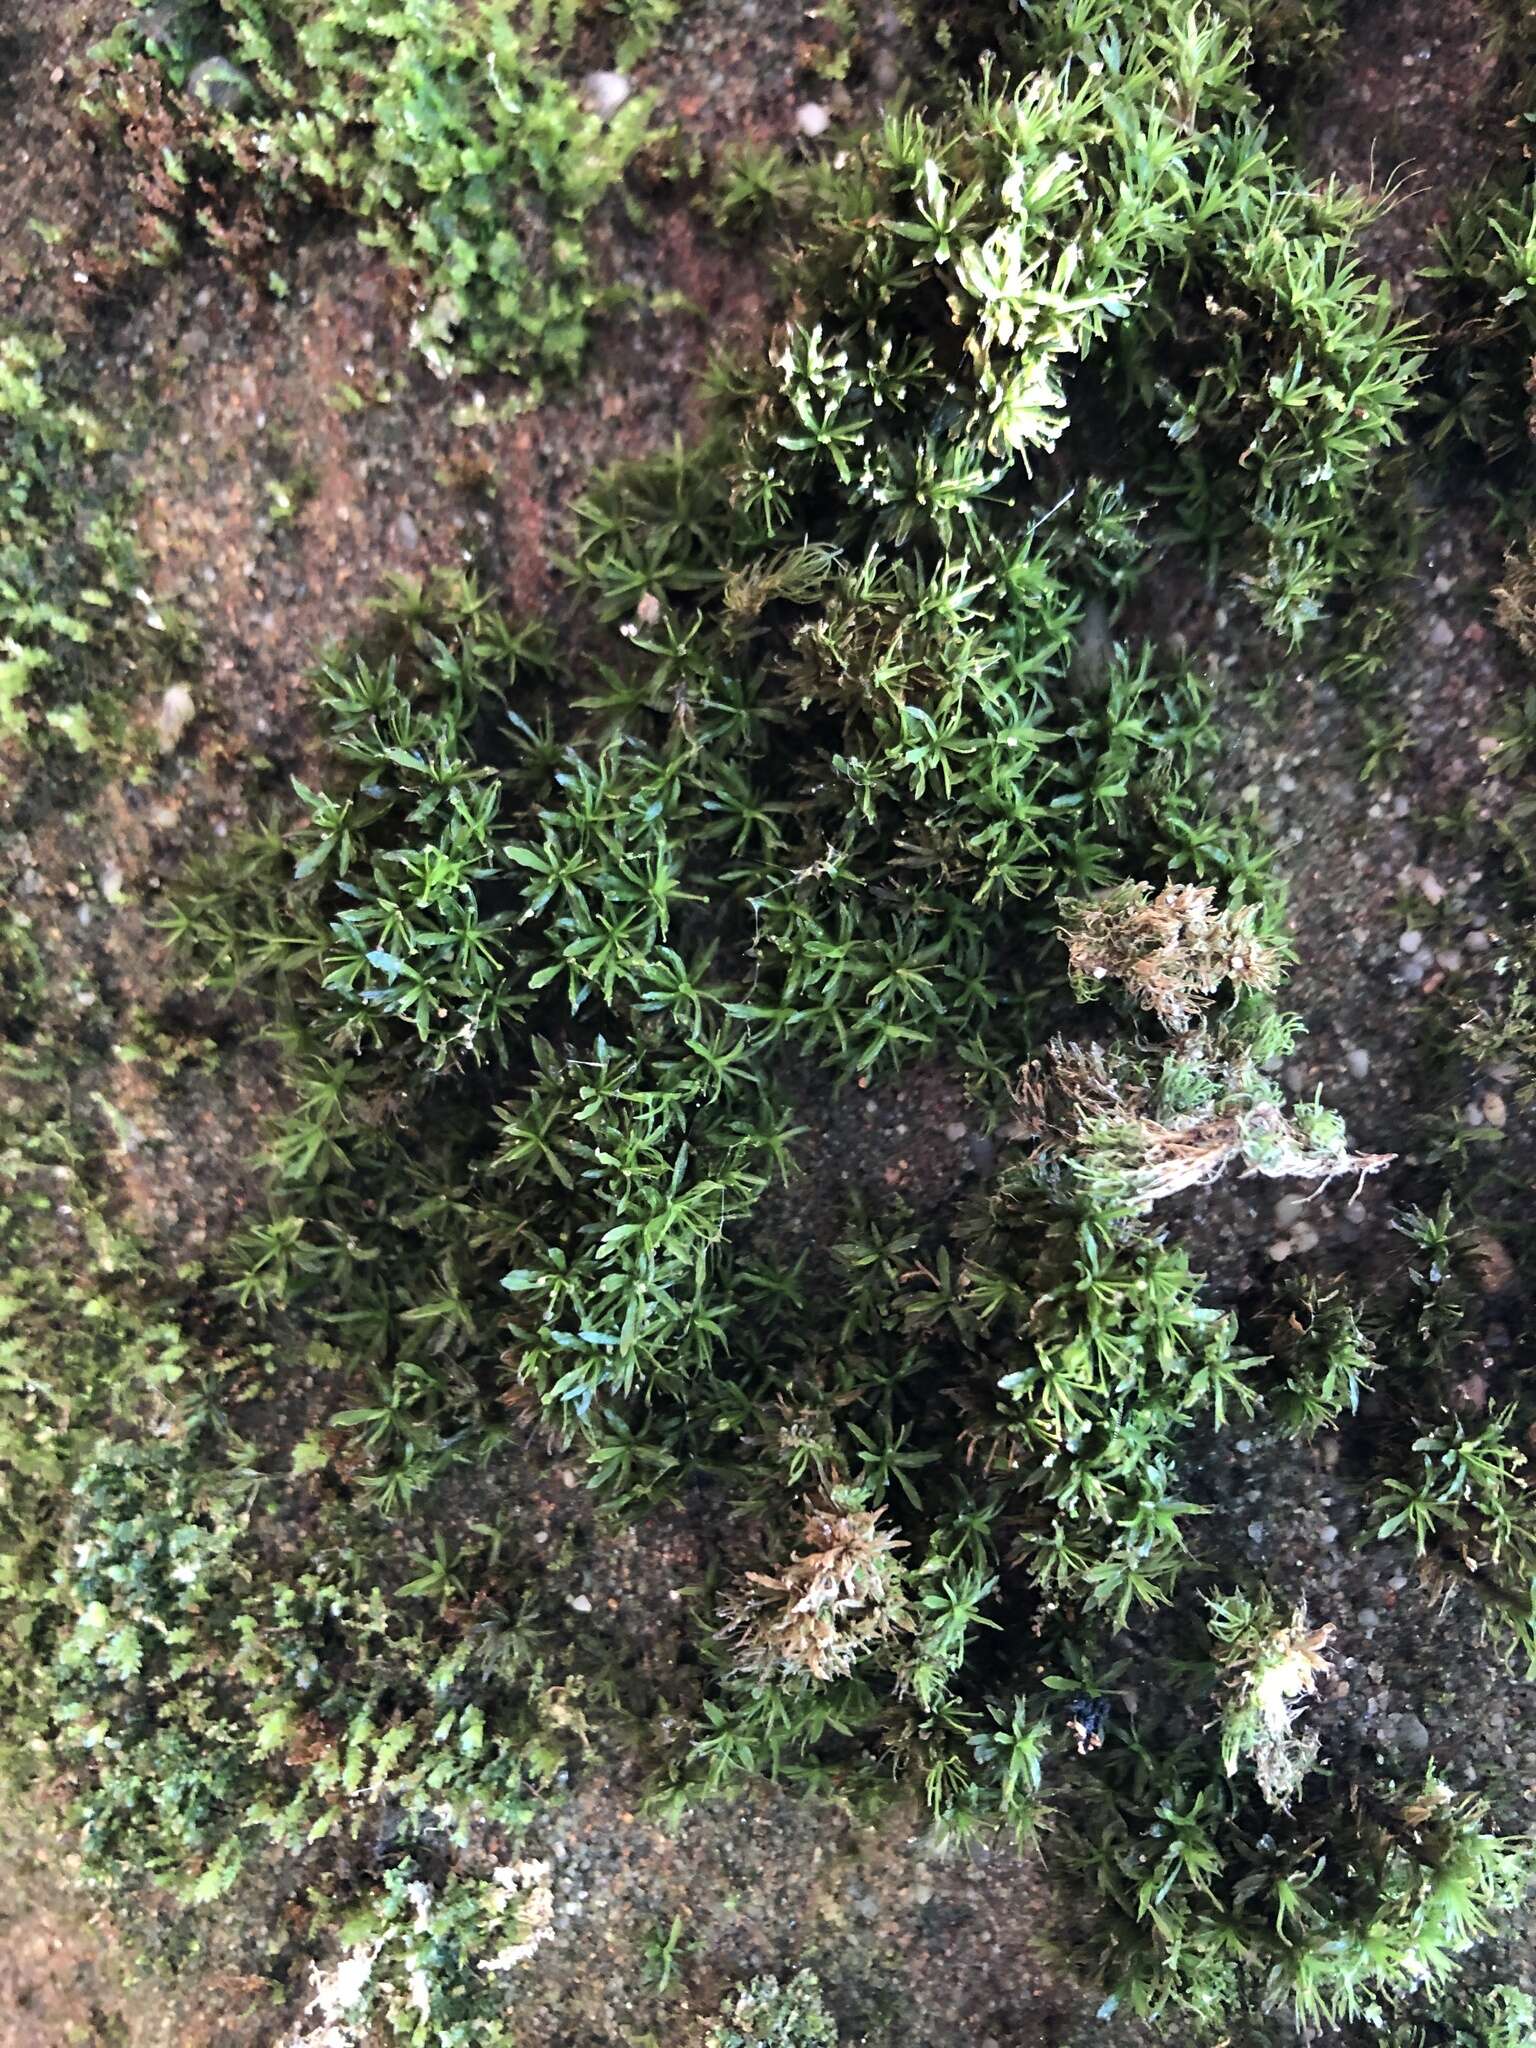 Image of Texan syrrhopodon moss